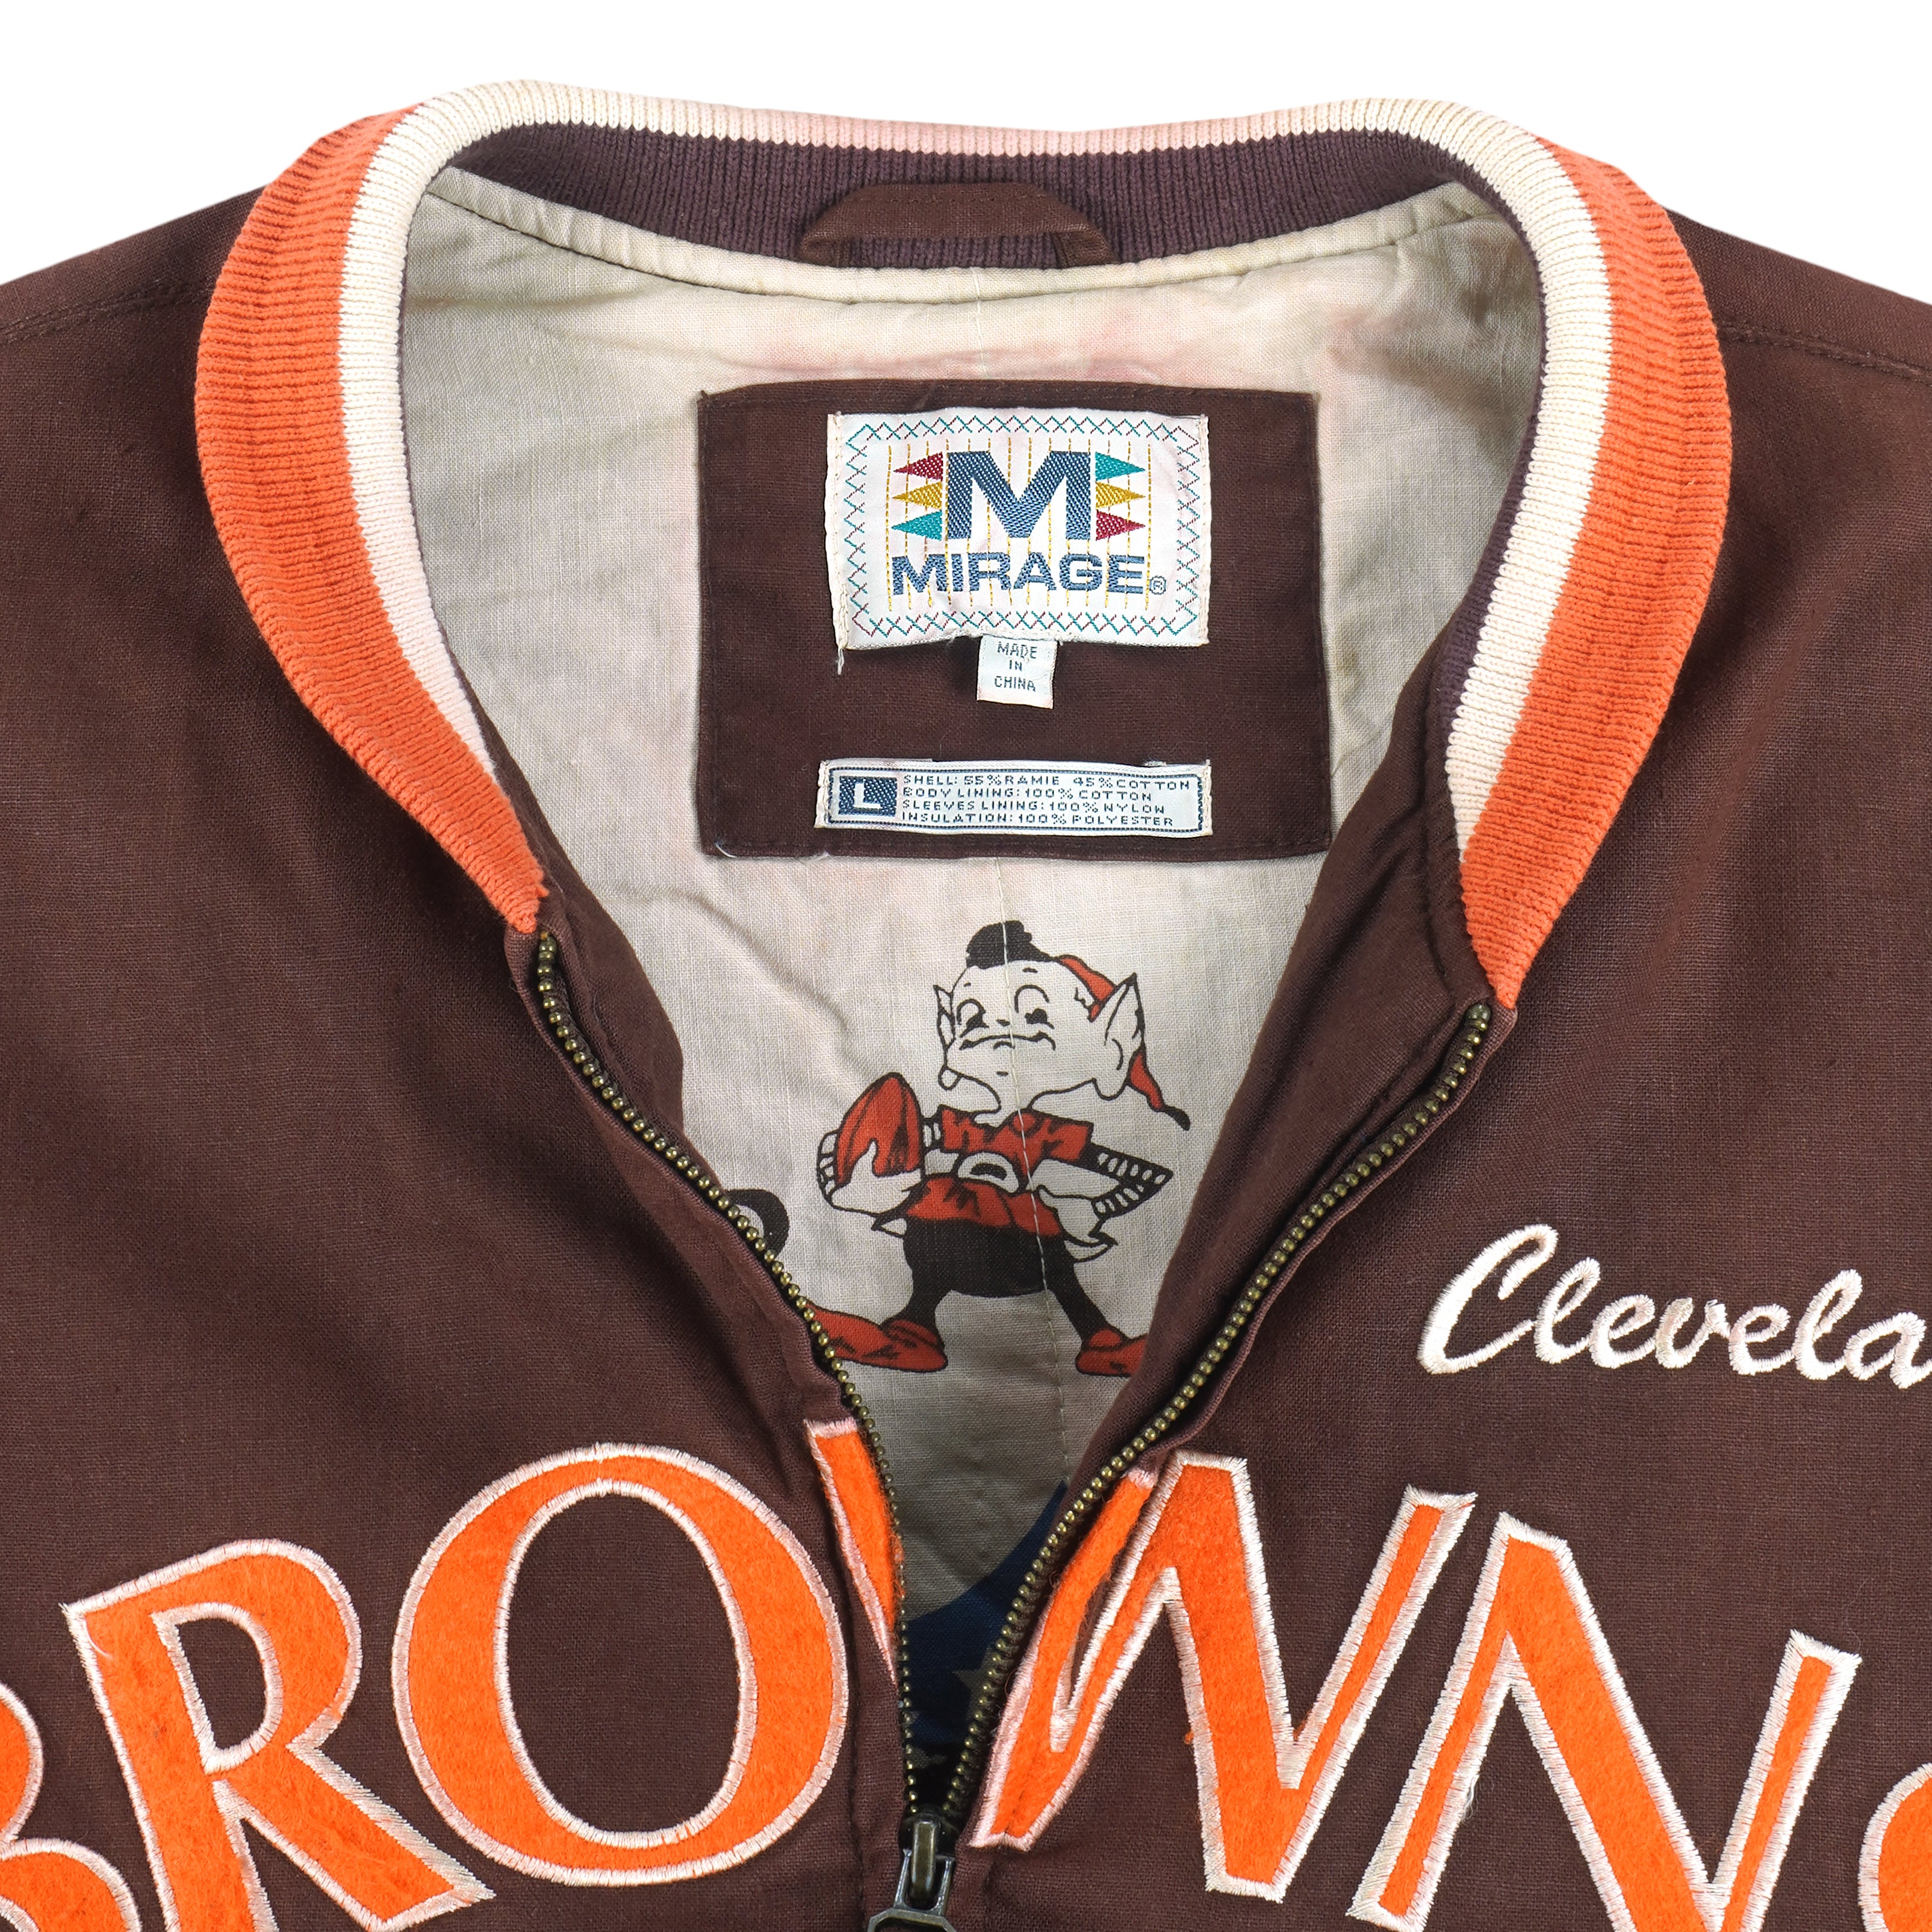 vintage cleveland browns jacket